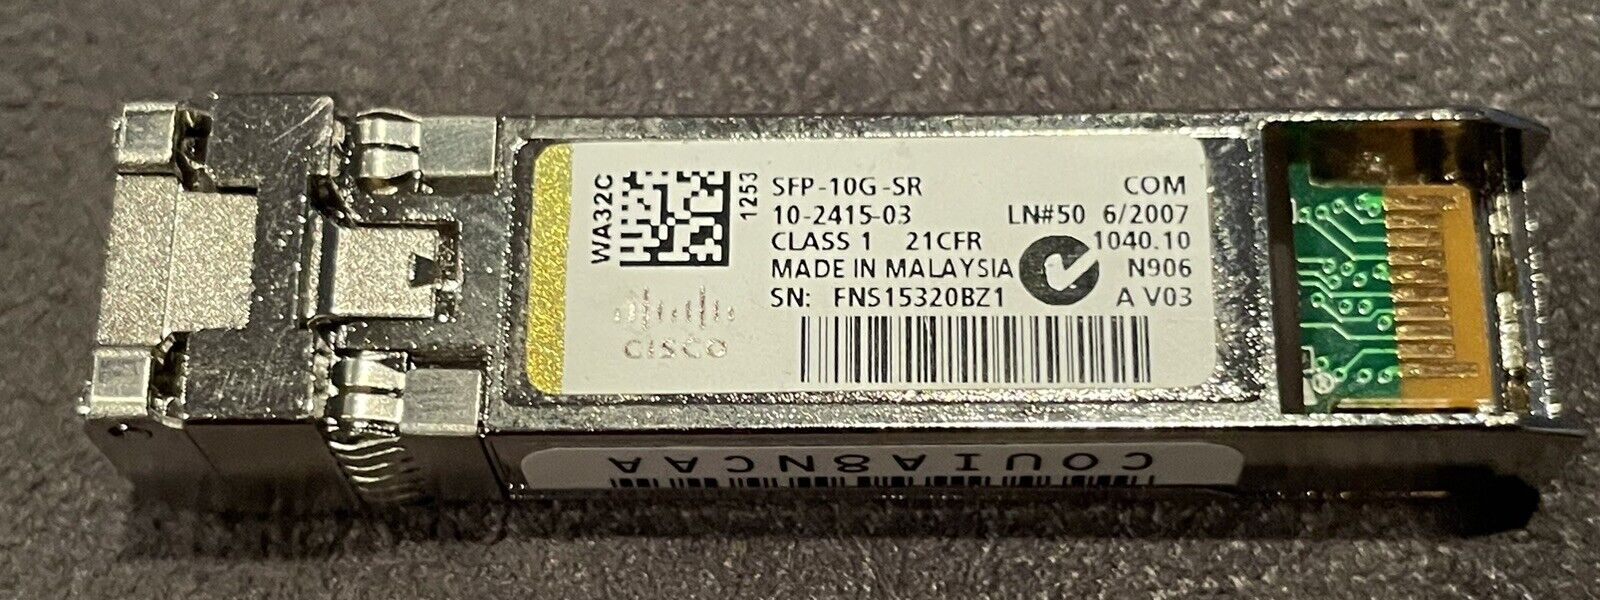 Genuine Cisco SFP-10G-SR 10-2415-03 Transceiver Module